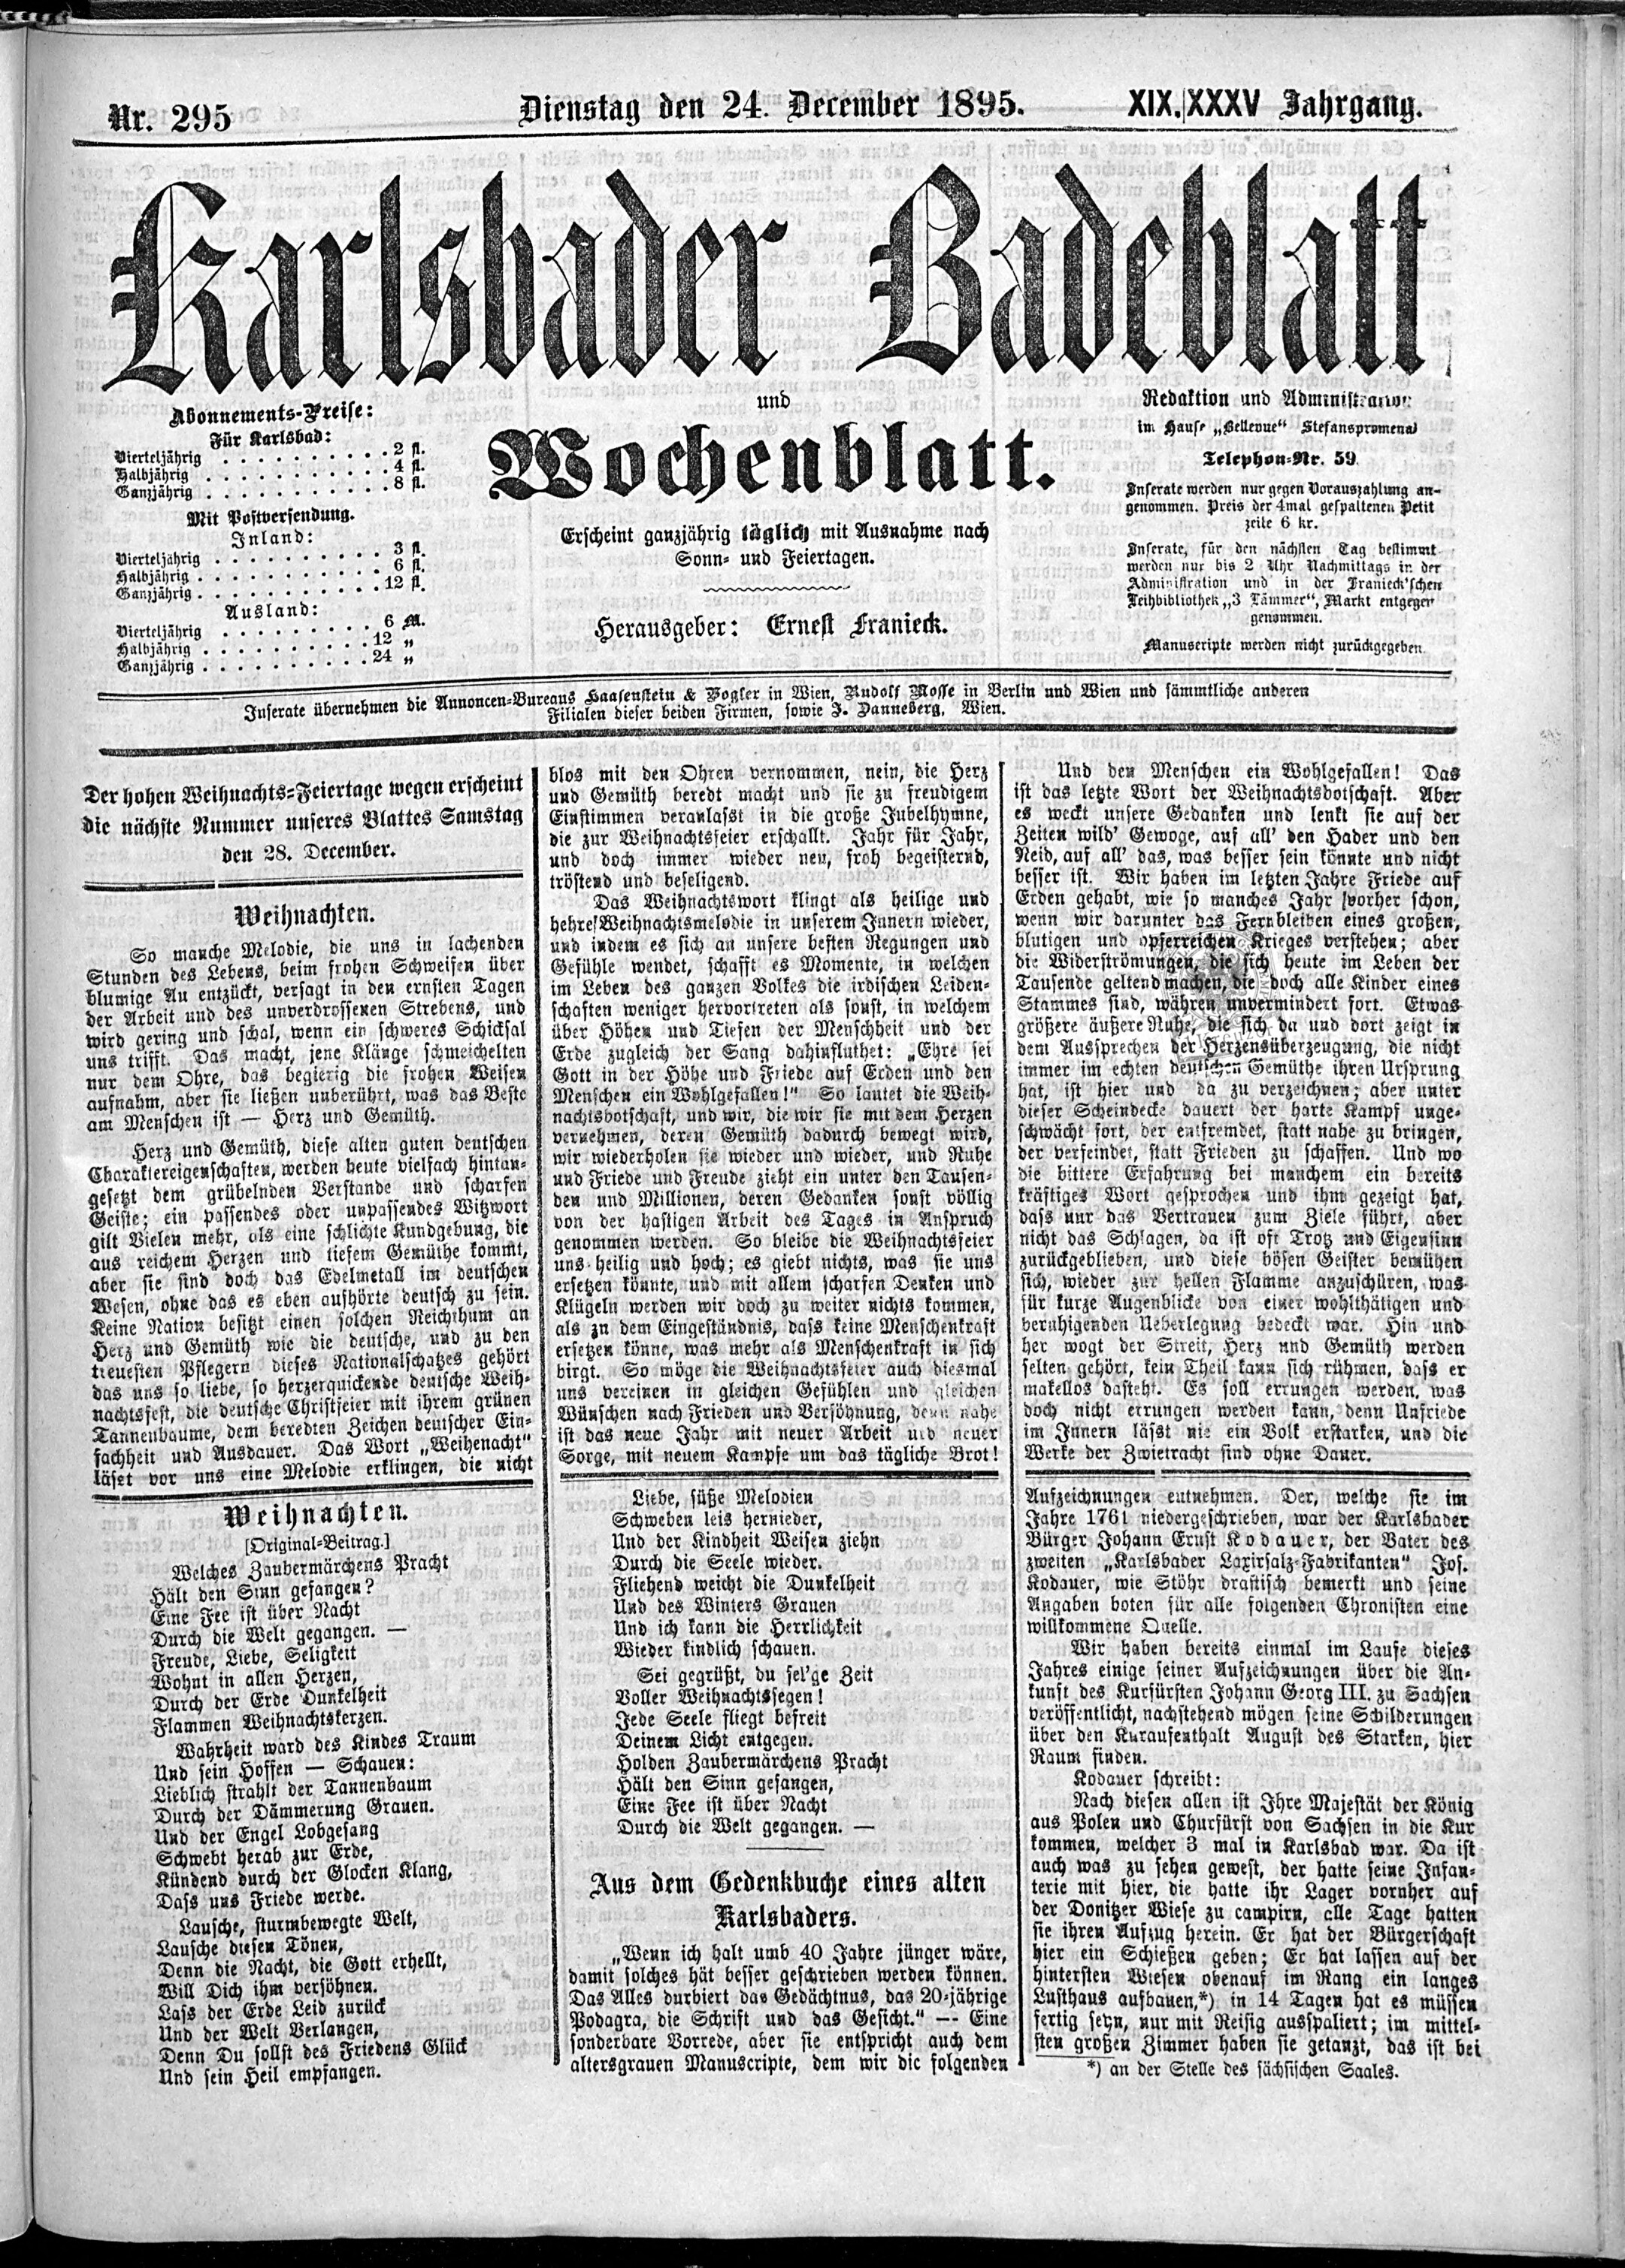 1. karlsbader-badeblatt-1895-12-24-n295_7225